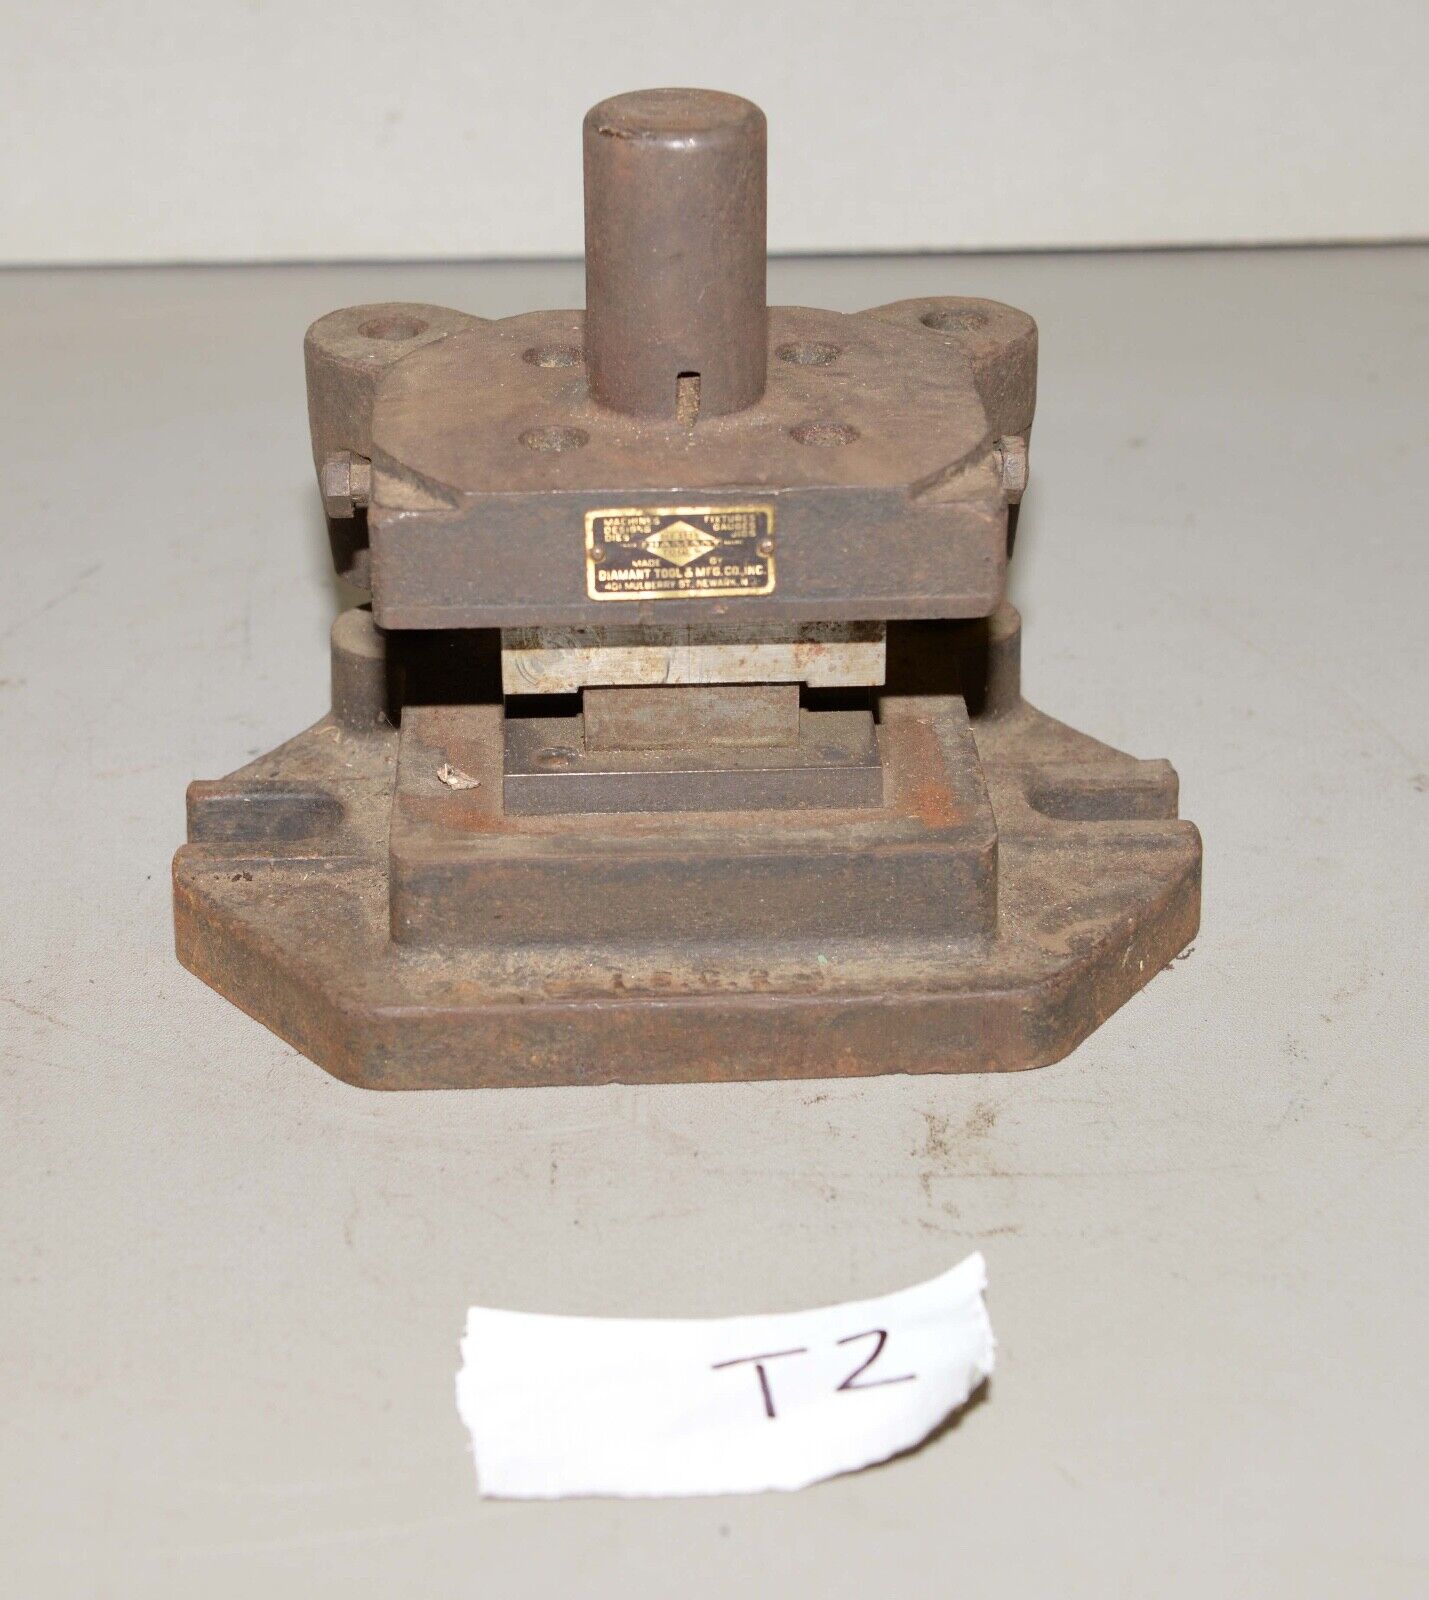 Vintage Punch press tooling die shoe frame industrial metal working jewelry T2